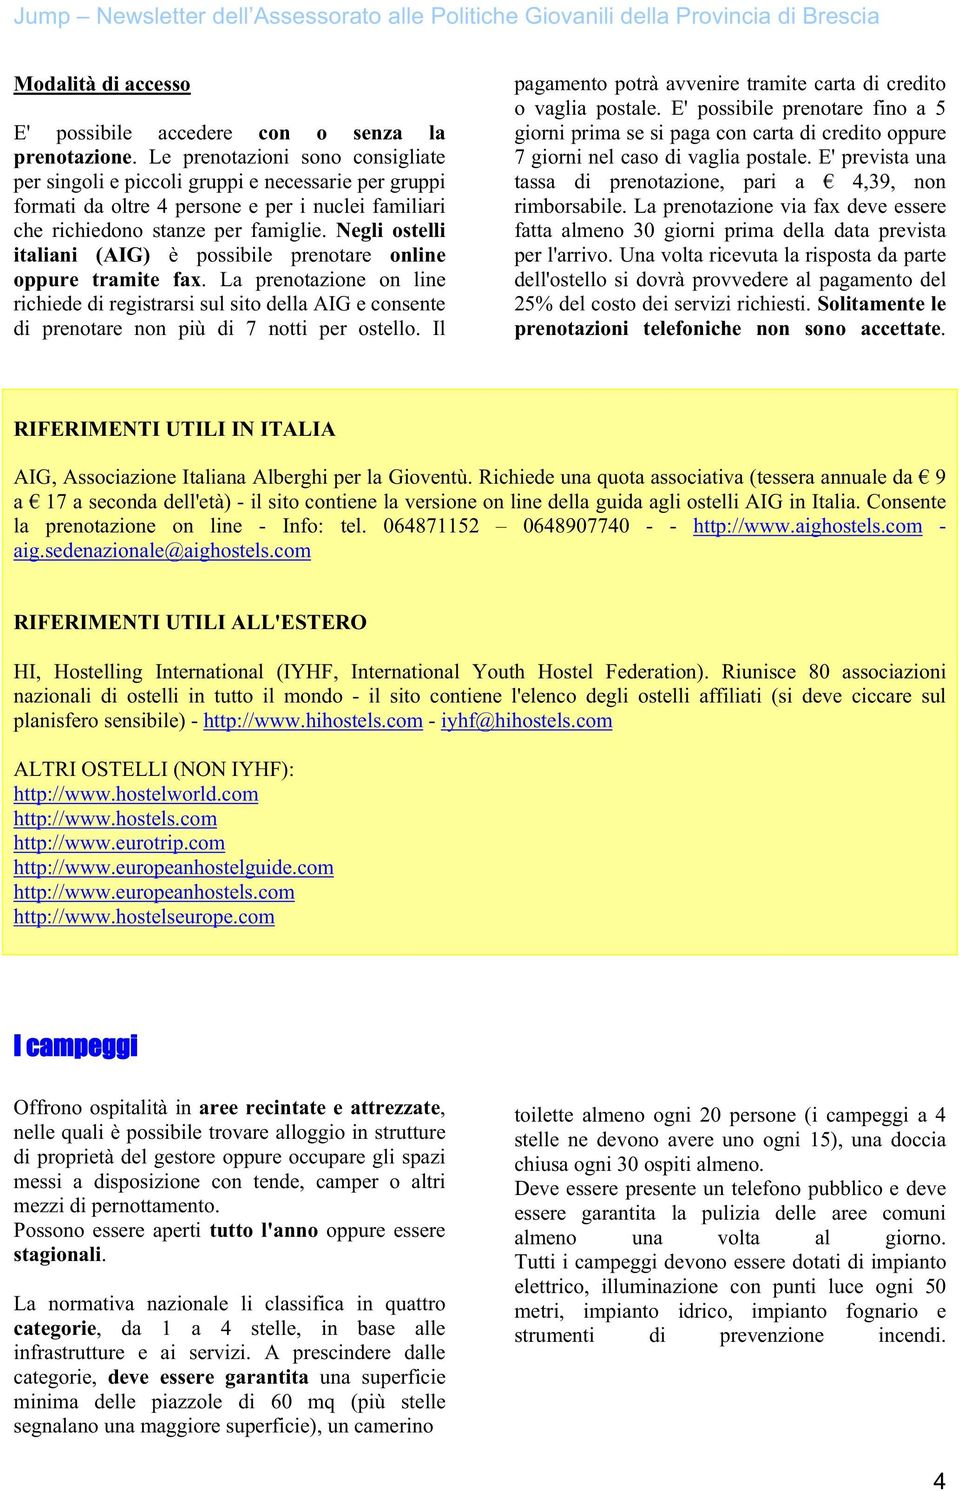 Negli ostelli italiani (AIG) è possibile prenotare online oppure tramite fax. La prenotazione on line richiede di registrarsi sul sito della AIG e consente di prenotare non più di 7 notti per ostello.